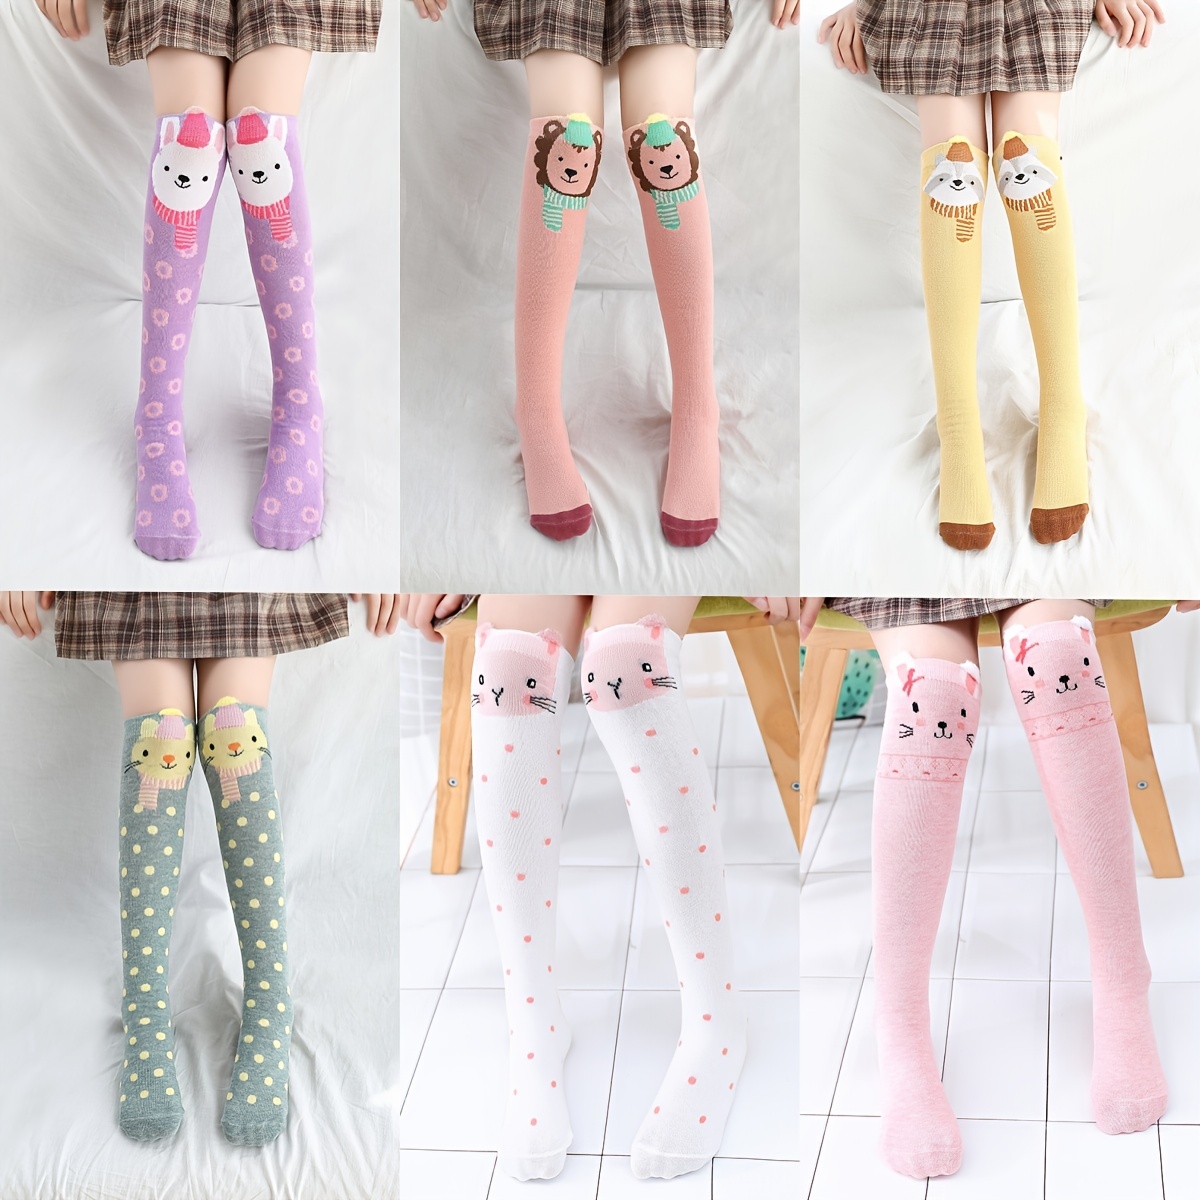 6 pares de calcetines de colores a rayas hasta la rodilla, calcetines de  tubo de color blanco y negro a la rodilla para mujeres y niñas